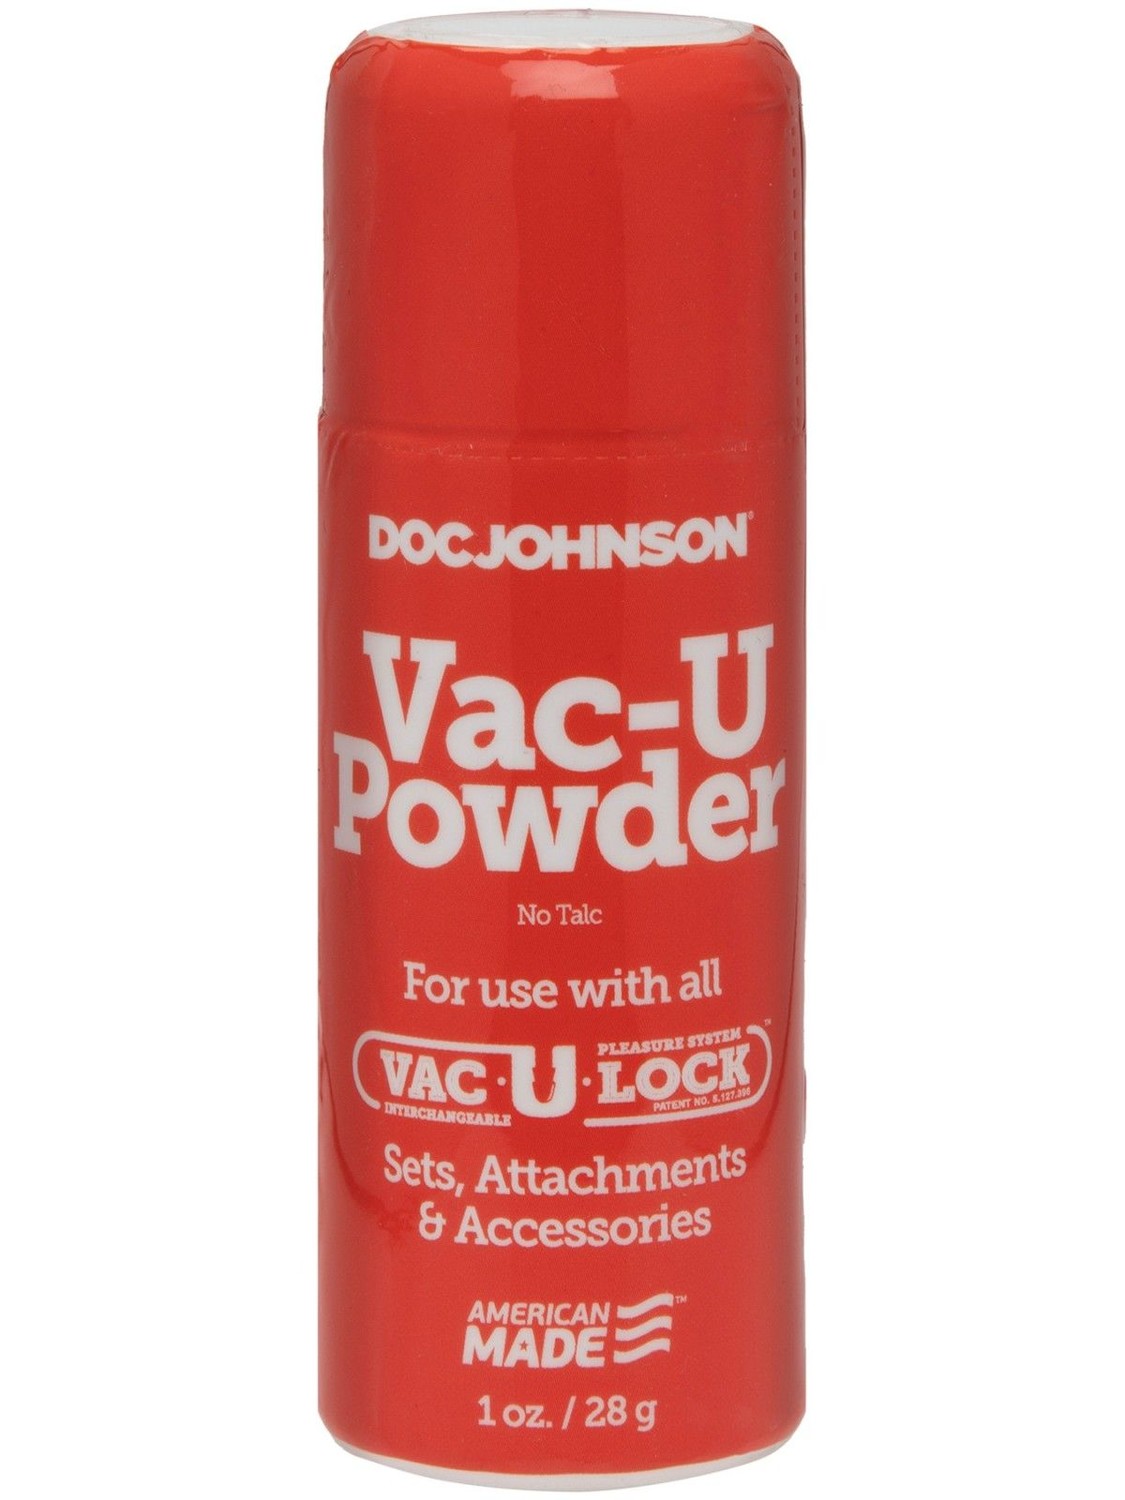 Doc Johnson Ošetřující pudr Vac-U Powder – Doc Johnson (28 g)